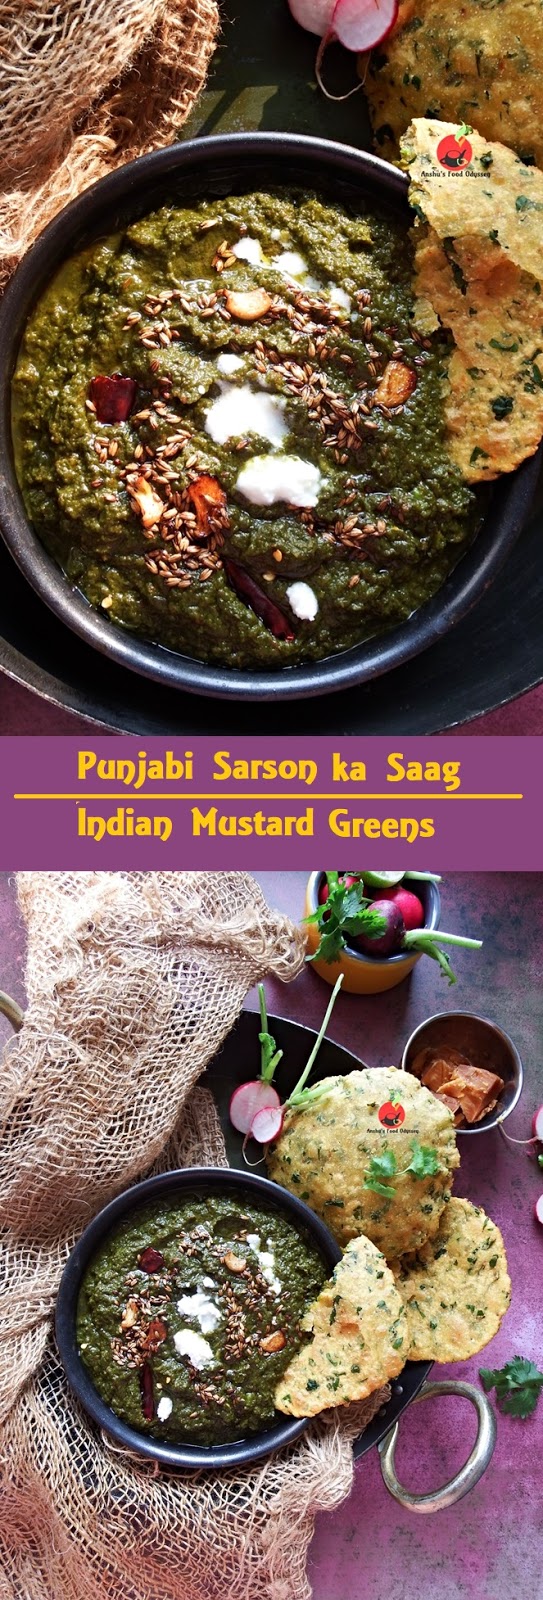 Punjabi Sarson ka Saag | Indian Mustard Greens Curry